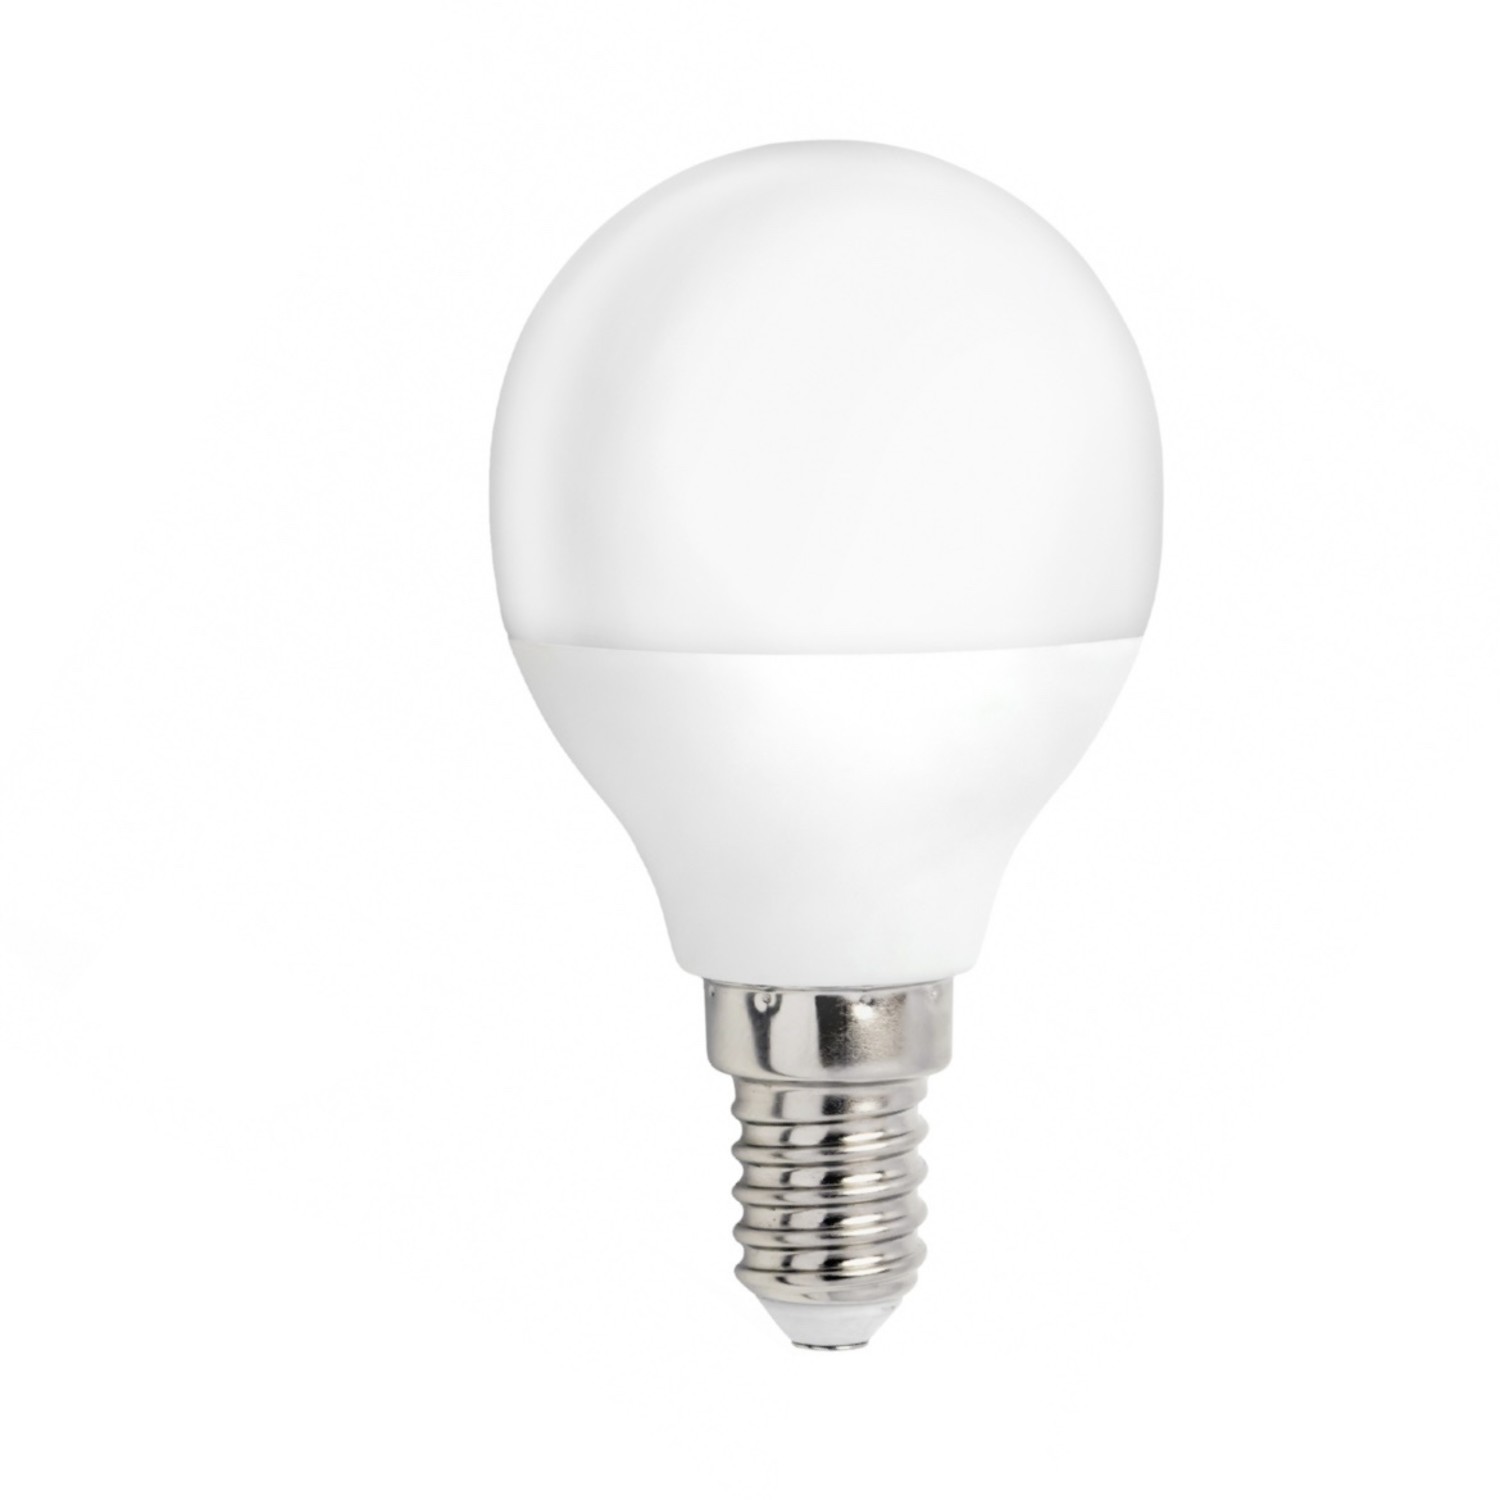 Bermad Eigenaardig huisvrouw LED lamp - E14 fitting - 4W vervangt 30W - Warm wit licht 3000K -  Ledlichtdiscounter.nl